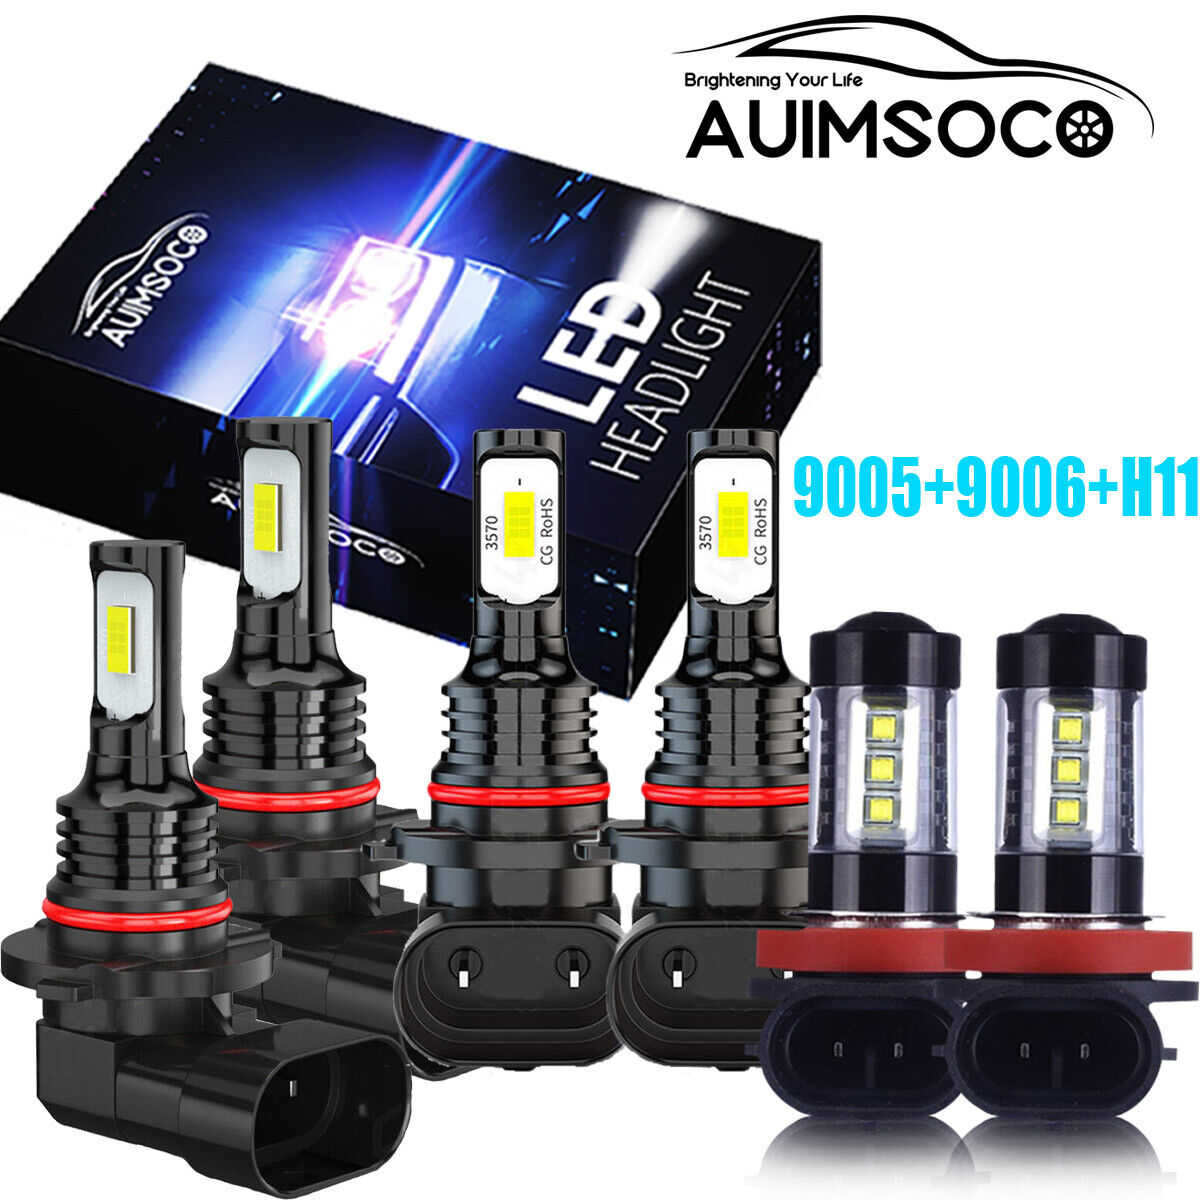 9005 9006 H11 LED Combo Headlights Fog Light Kit High Low Beam Bulbs White 6000K